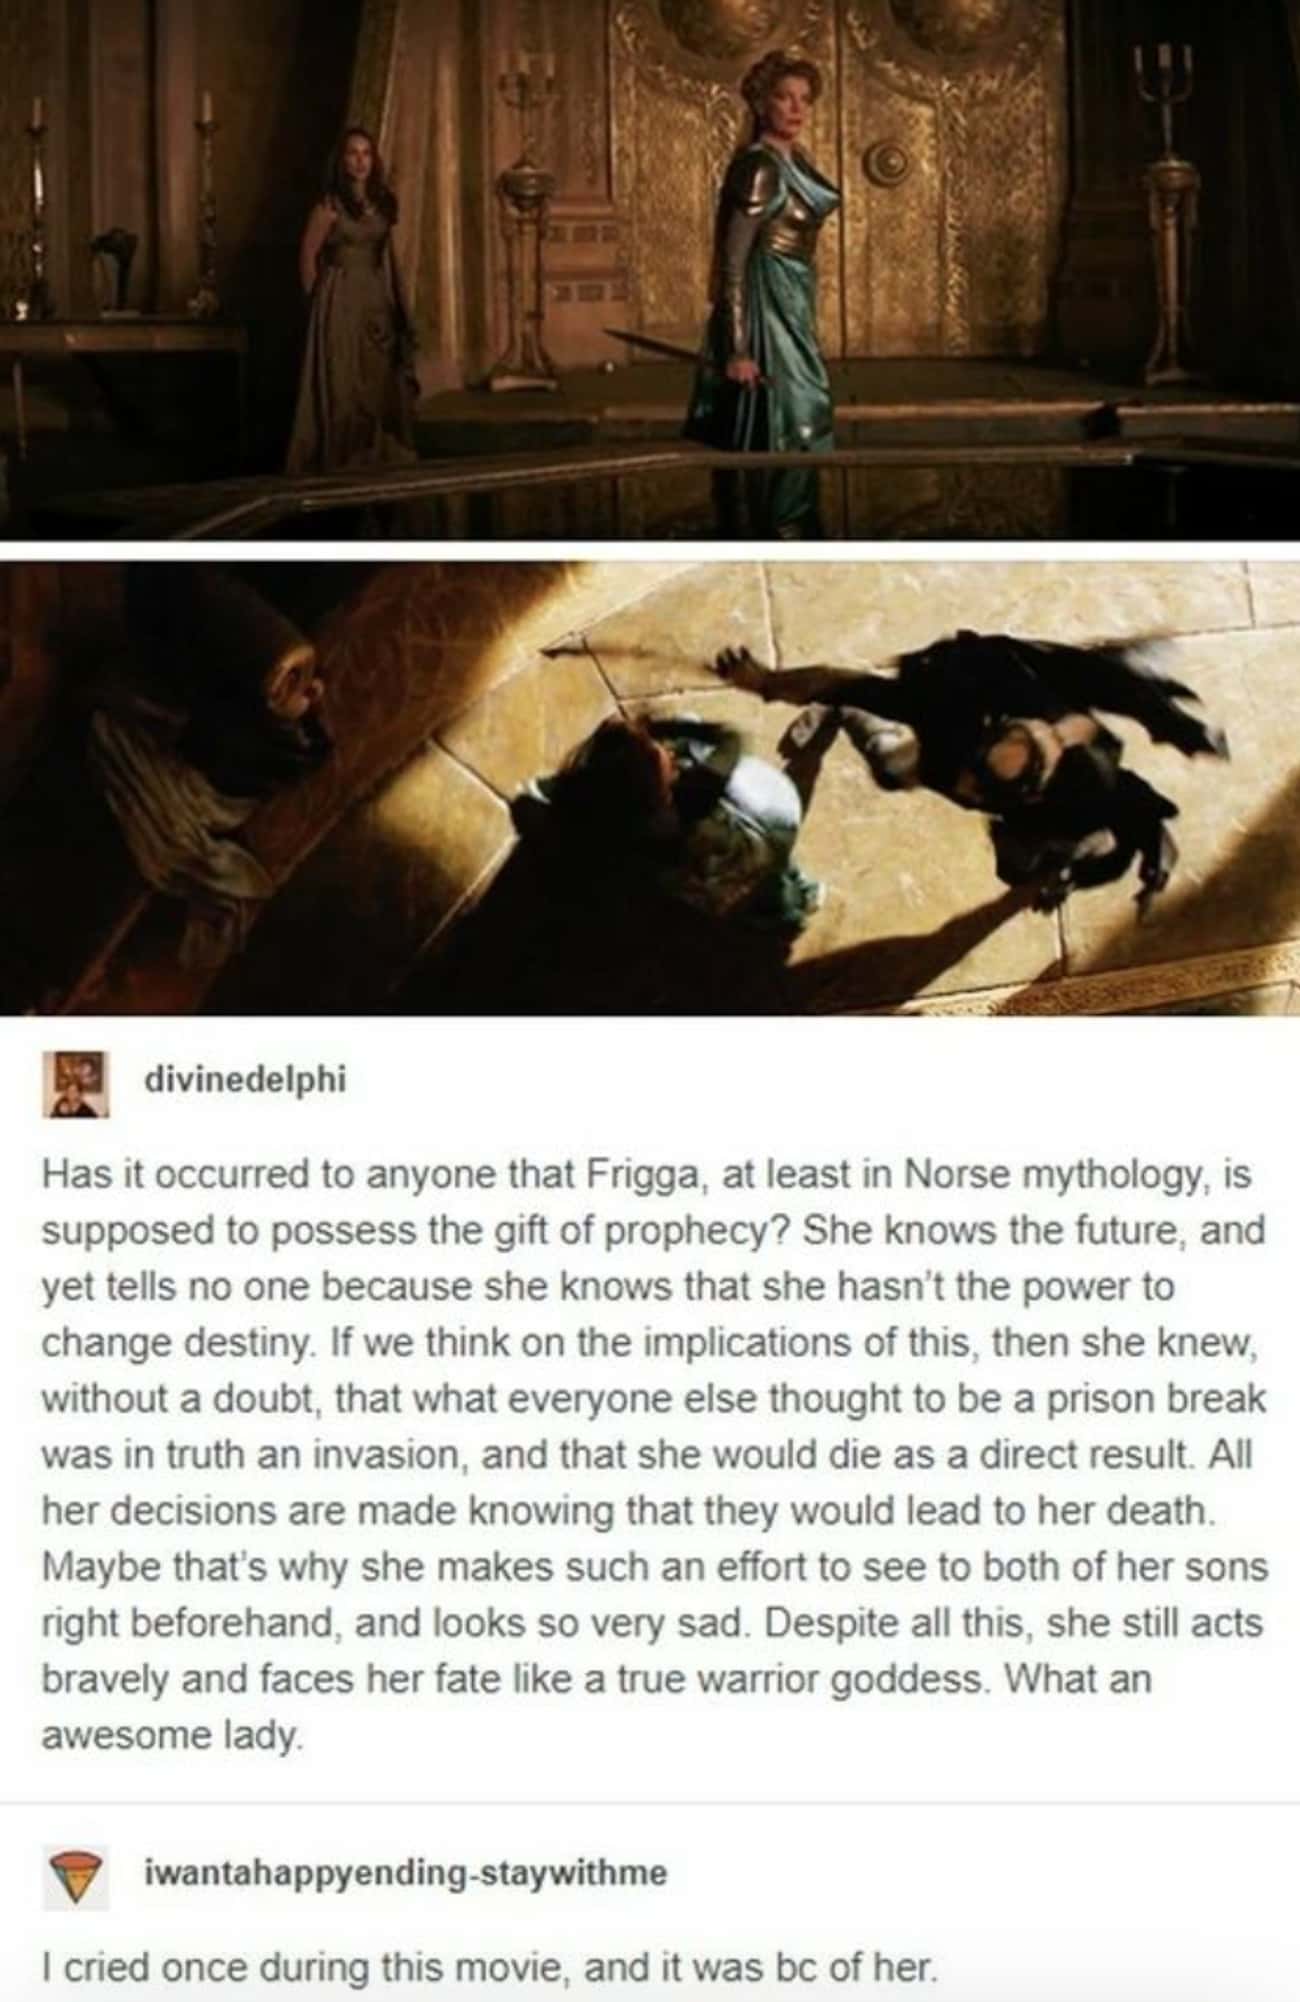 Frigga, a true queen in Marvel